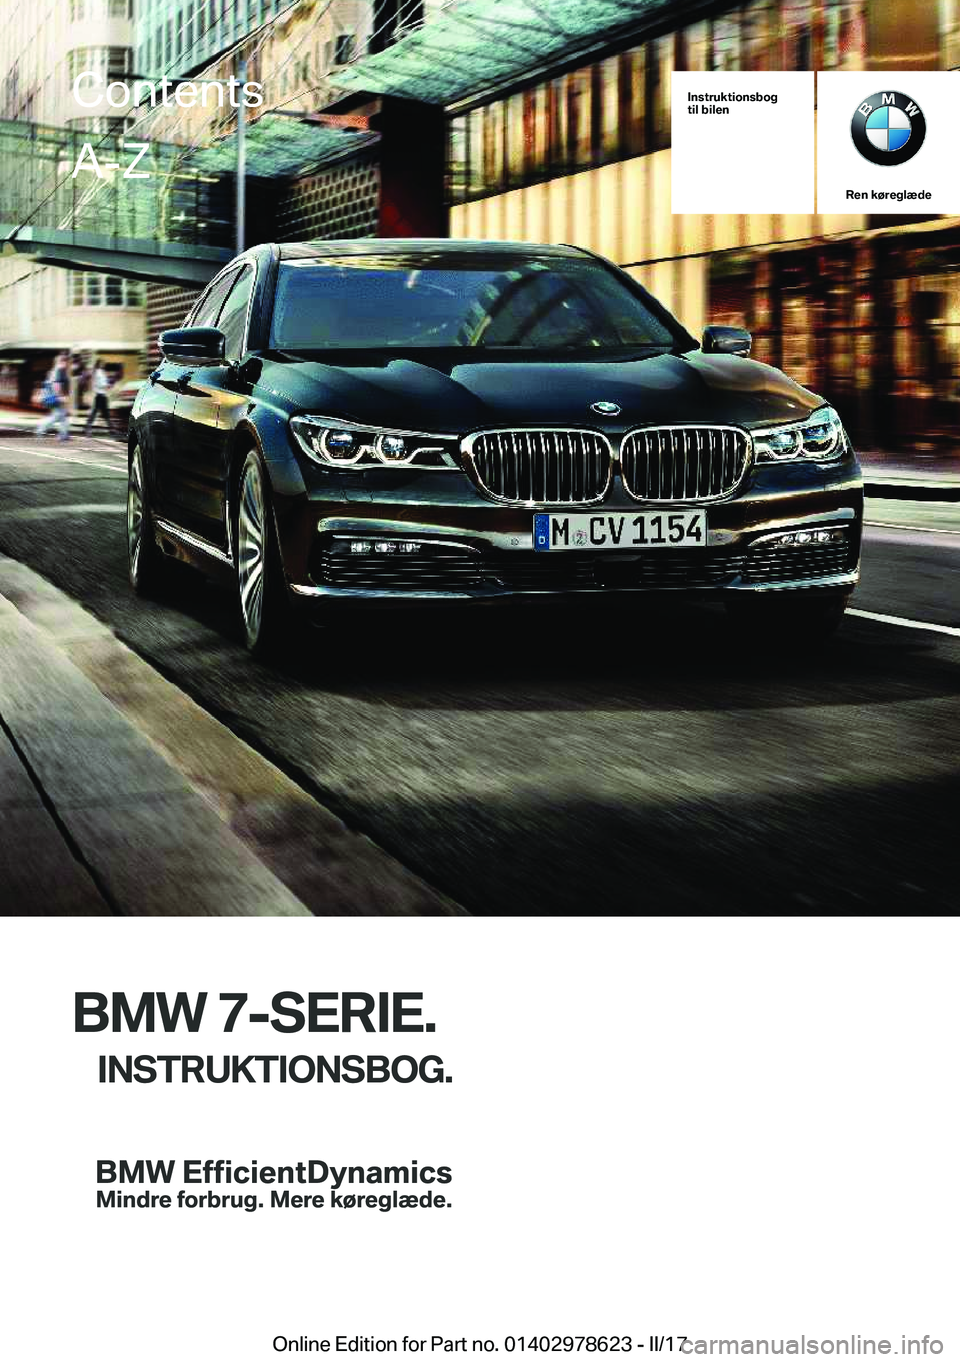 BMW 7 SERIES 2018  InstruktionsbØger (in Danish) �I�n�s�t�r�u�k�t�i�o�n�s�b�o�g
�t�i�l��b�i�l�e�n
�R�e�n��k�